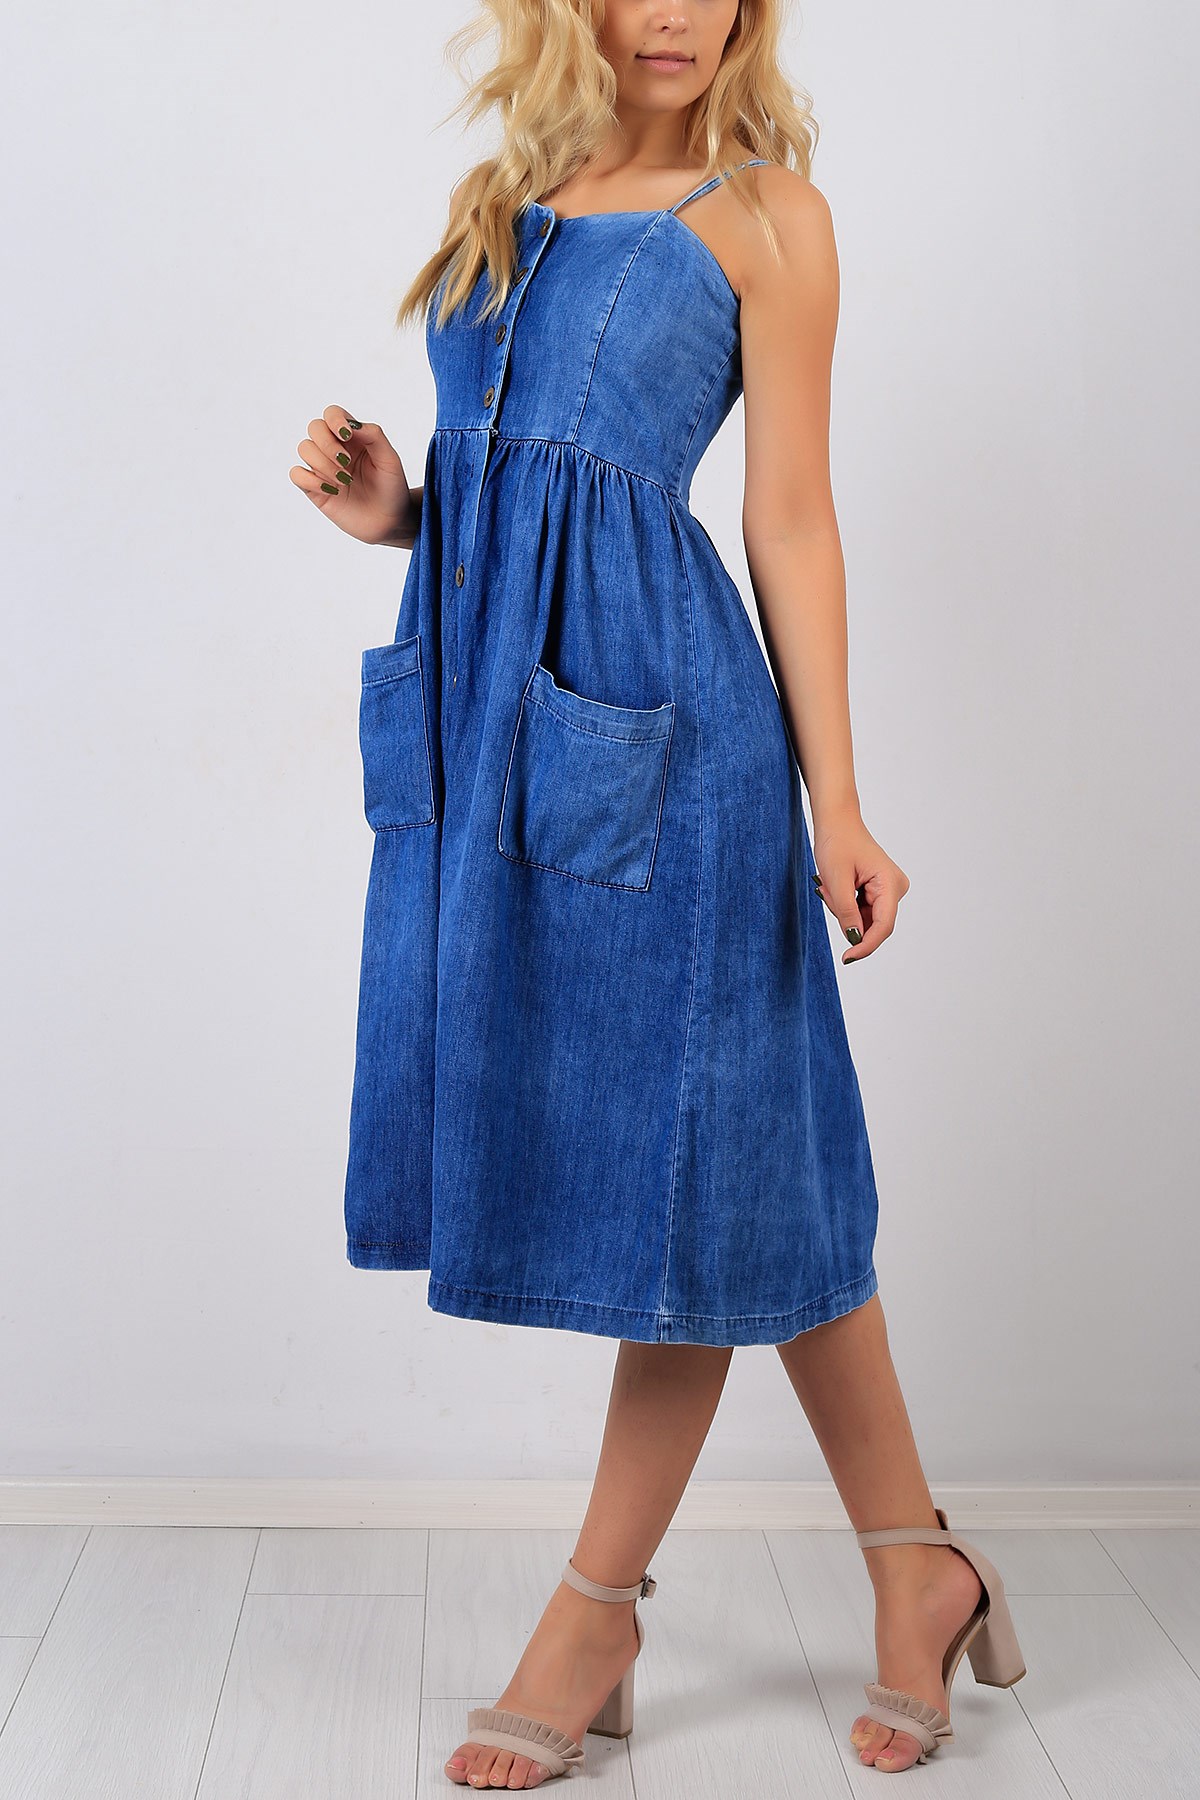 Askılı Düğme Detay Mavi Kot Bayan Elbise 8563B